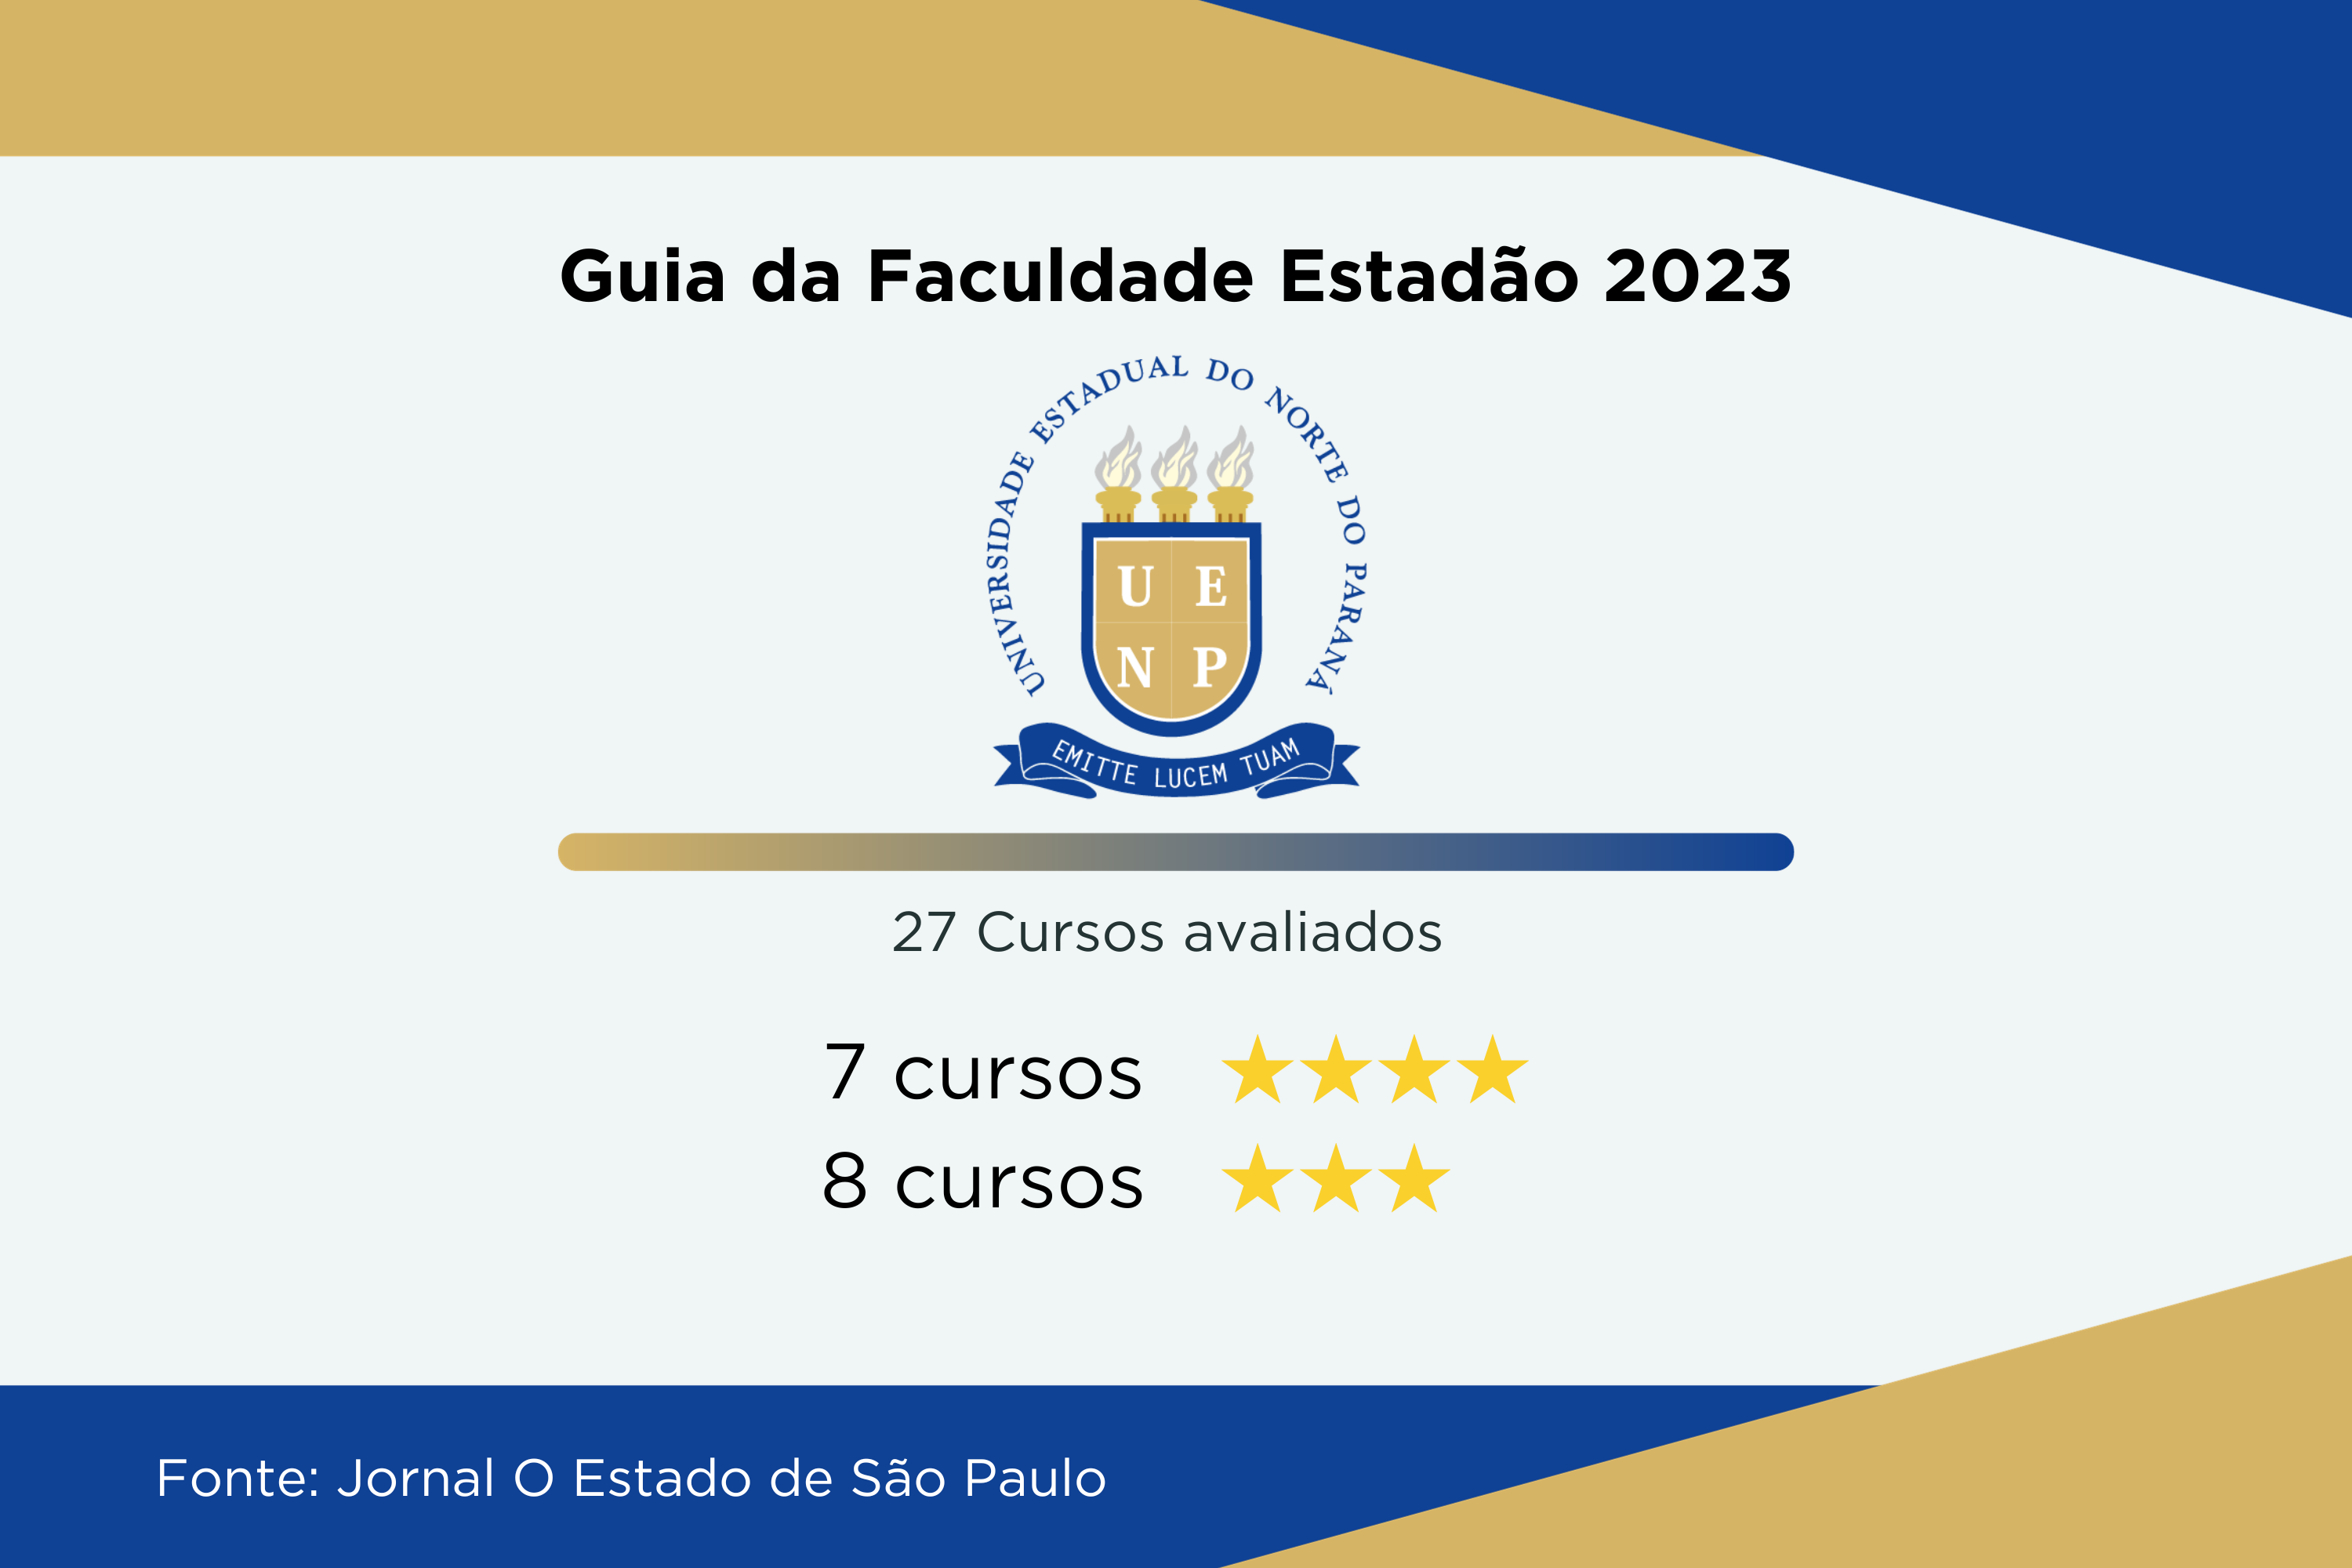 Universidades estaduais têm 22 cursos de excelência no Guia da Faculdade do Estadão 2023